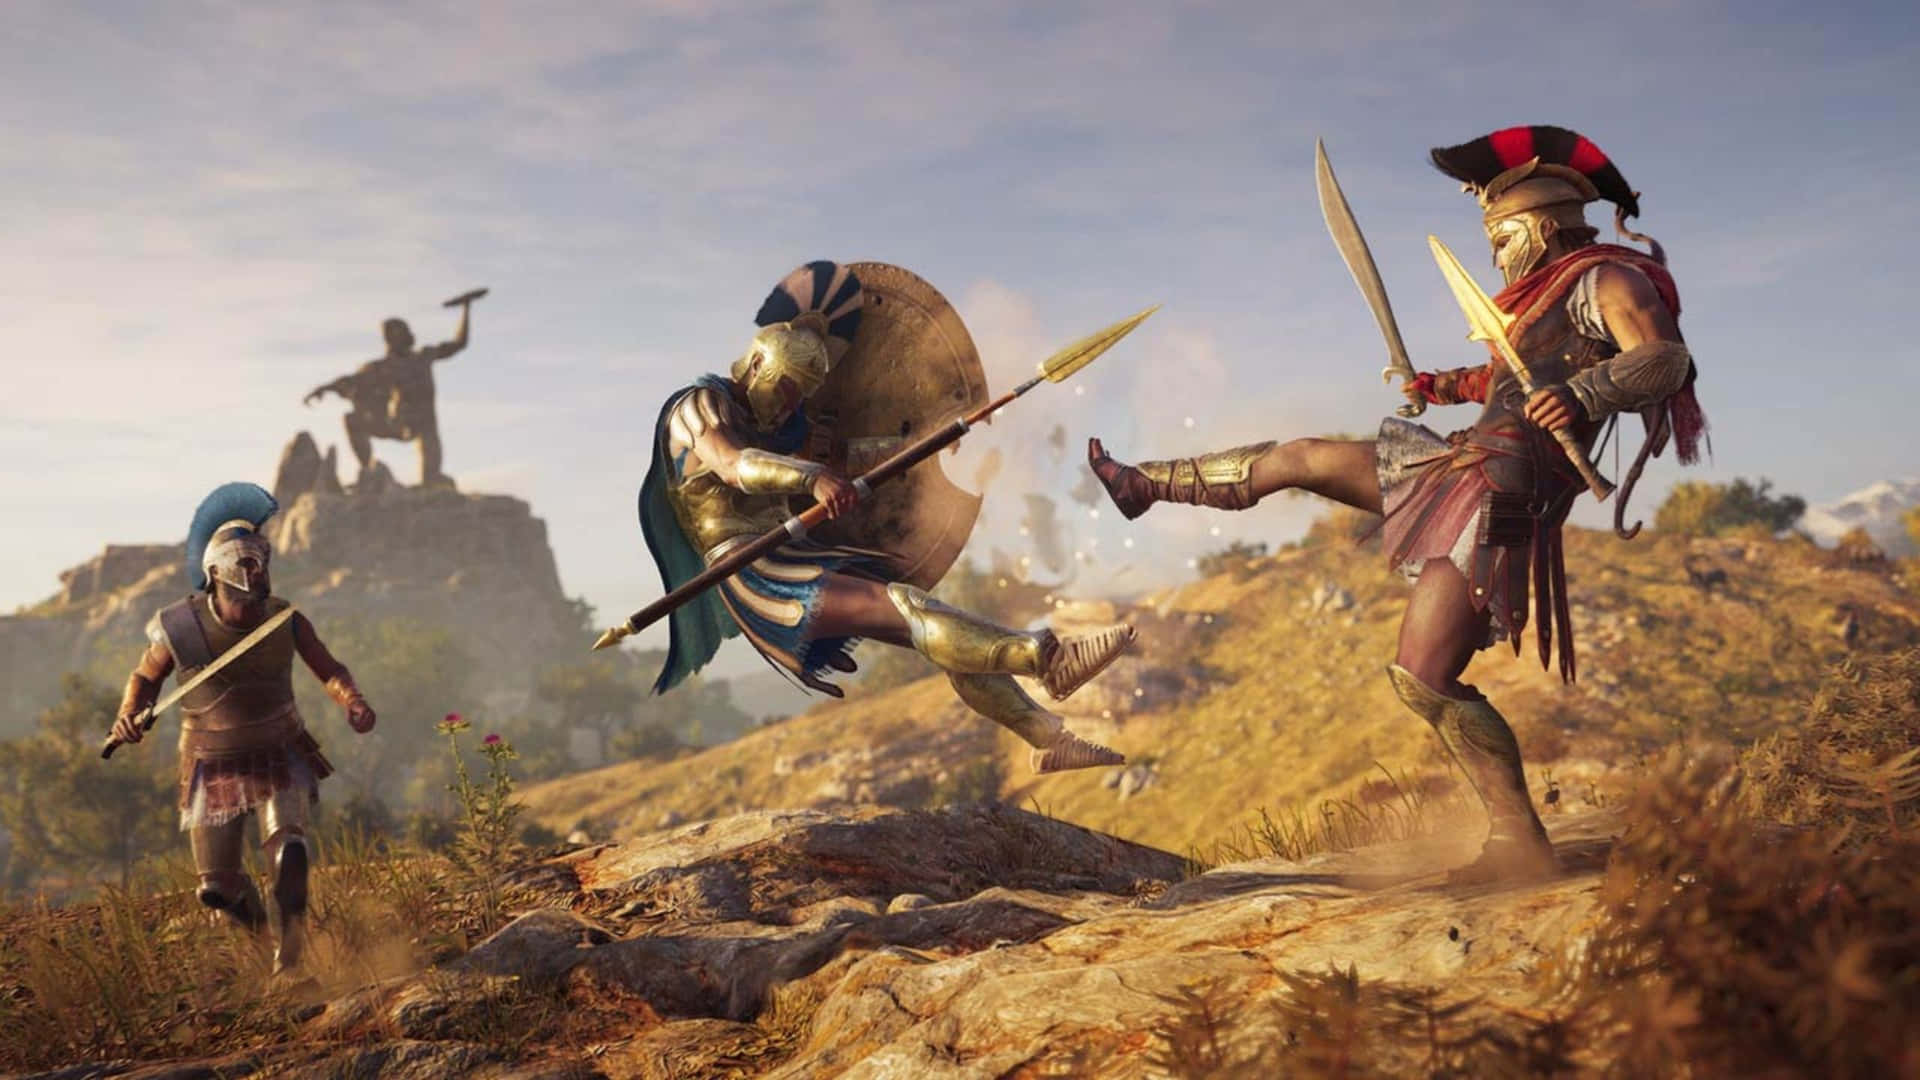 Stridmellan Spartaner 1440p Assassin's Creed Odyssey Bakgrund